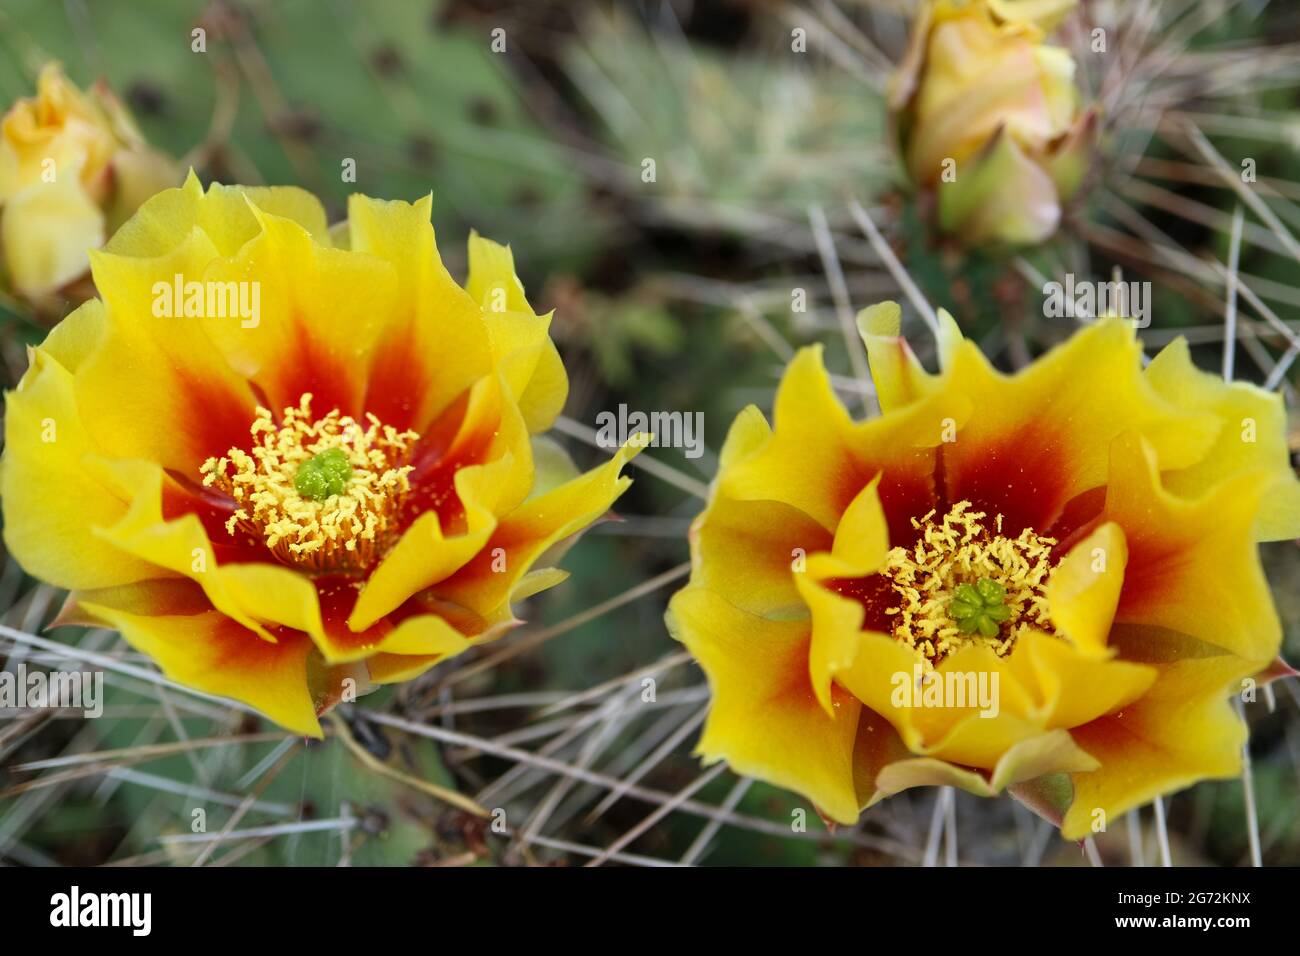 Kaktusblüte mit zarten Blütenblättern und Knospen, Kaktusblüte mit gelben - roten Blütenblättern und weißen Staubgefäßen, Kaktus mit Dornen, Schönheit in der Natur, blumig Stockfoto